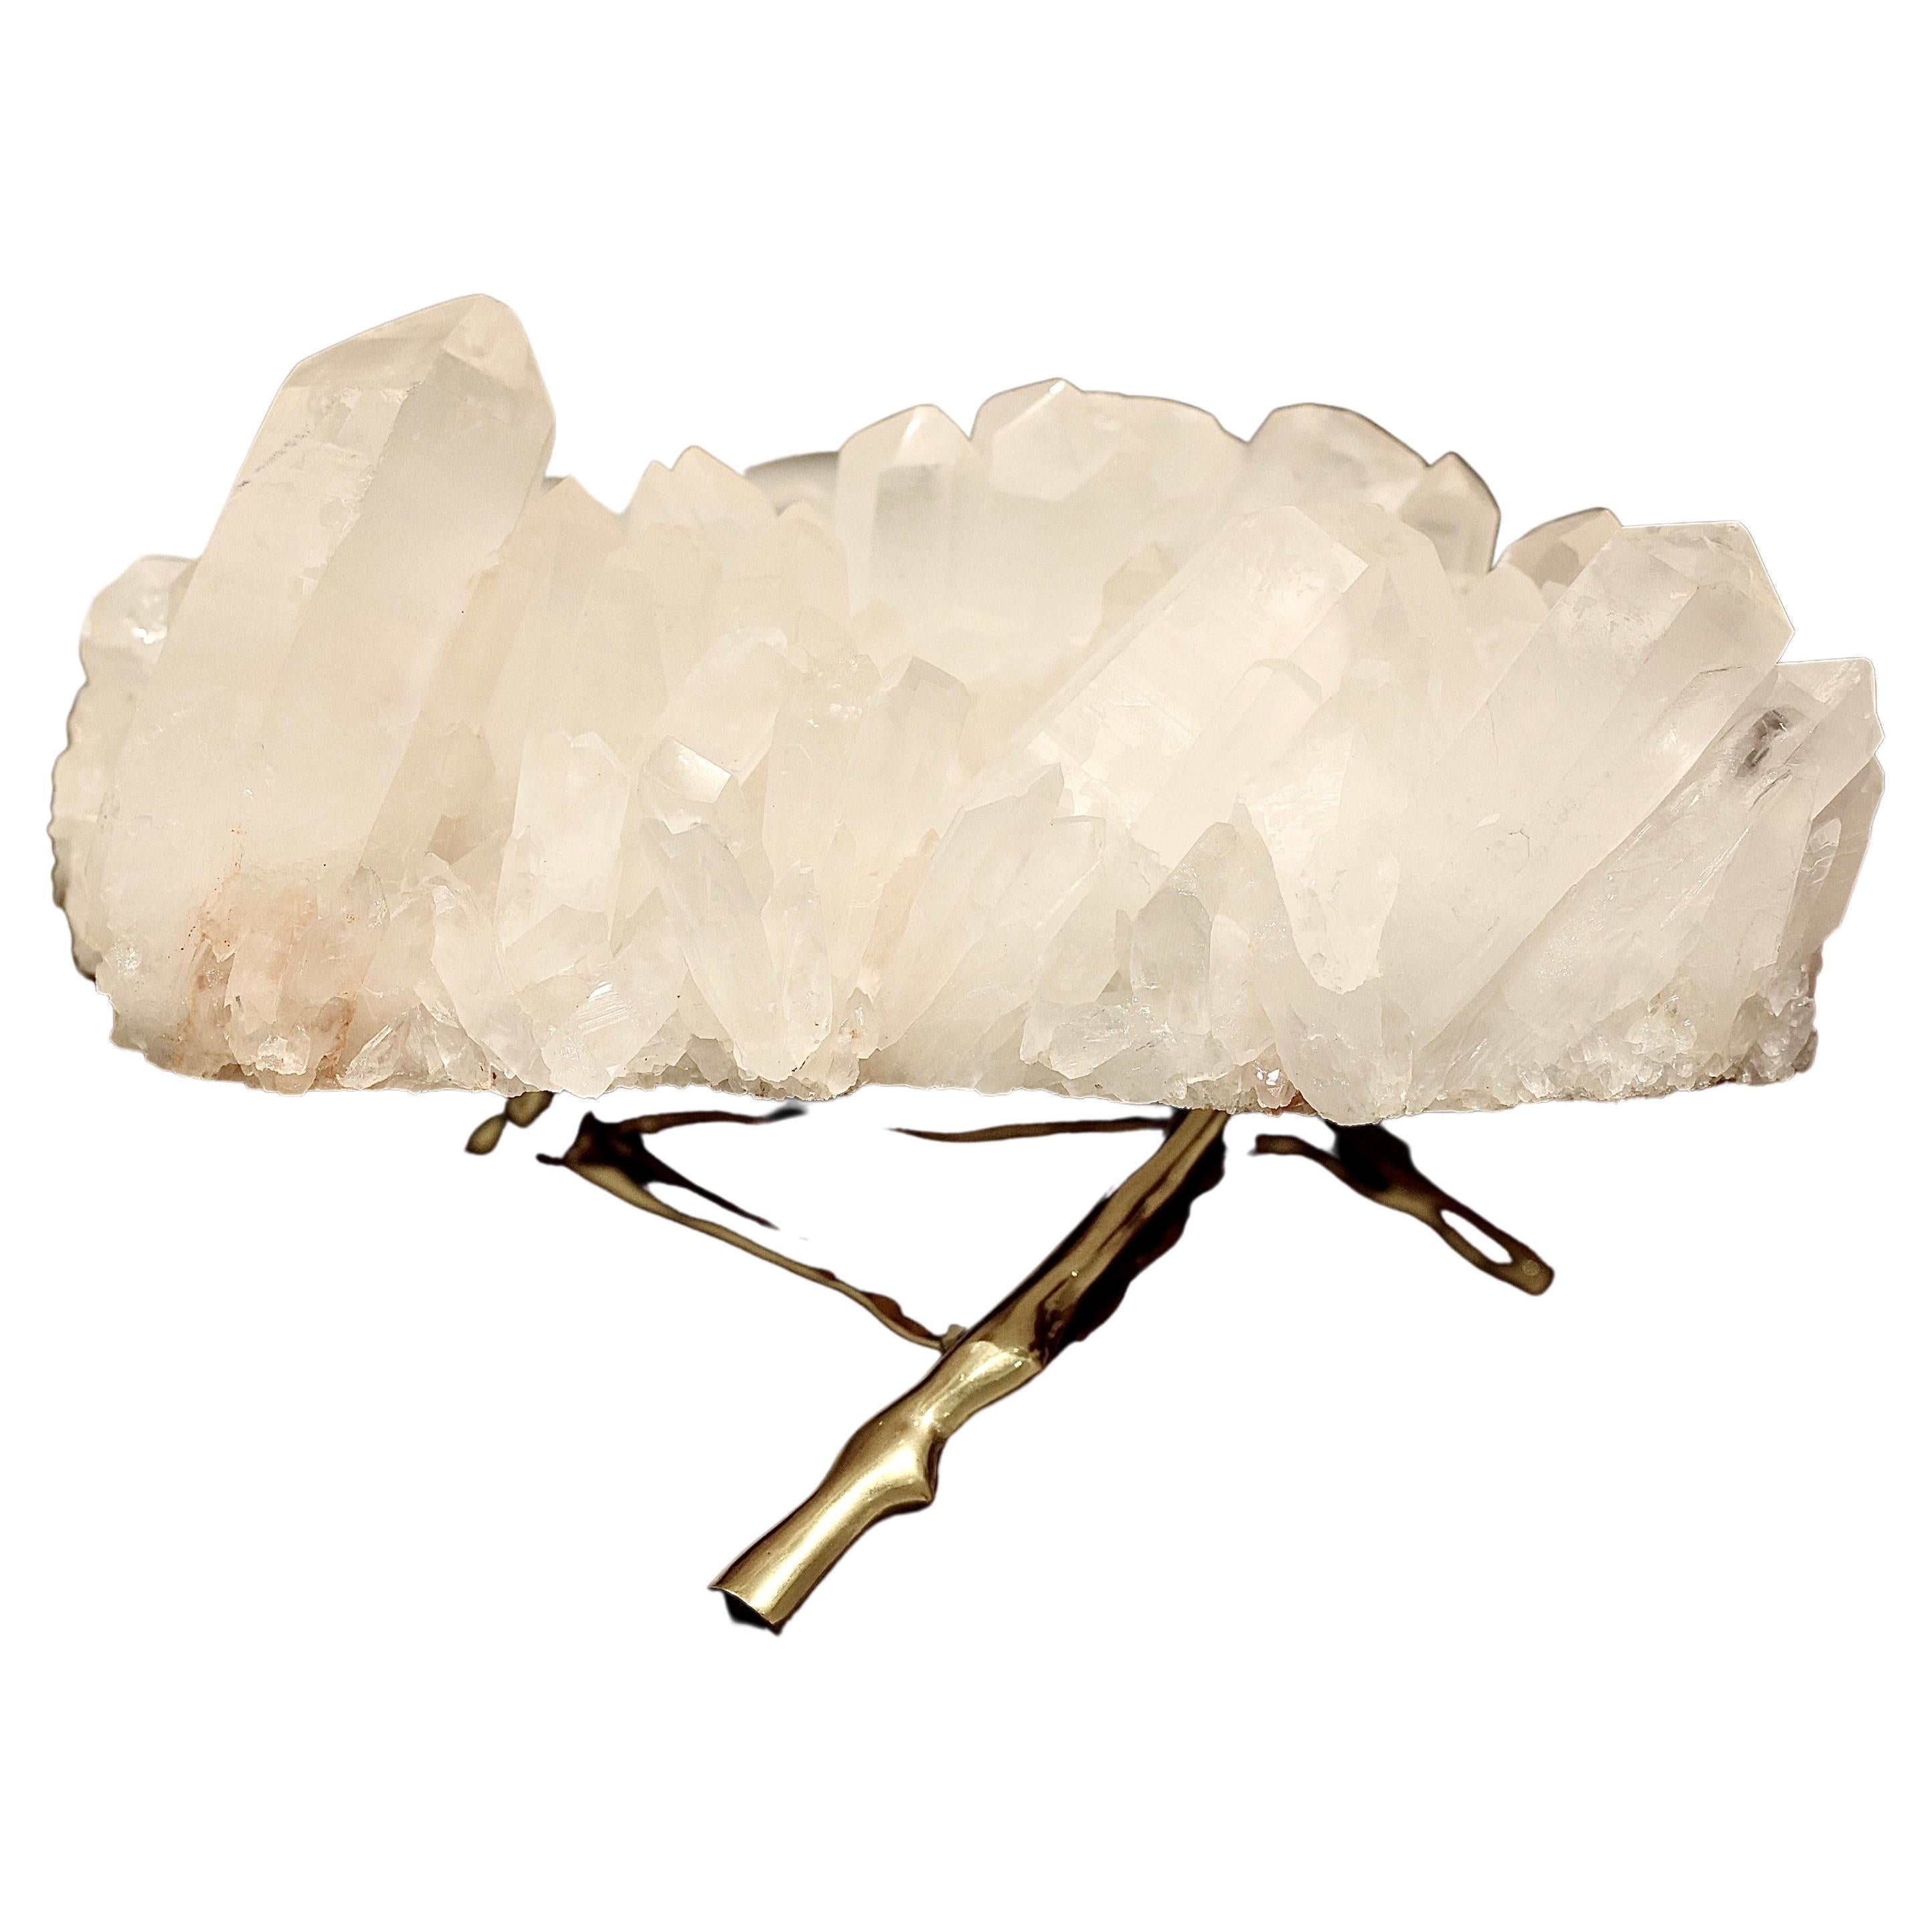 Natural Rock Crystal Sculpture For Sale